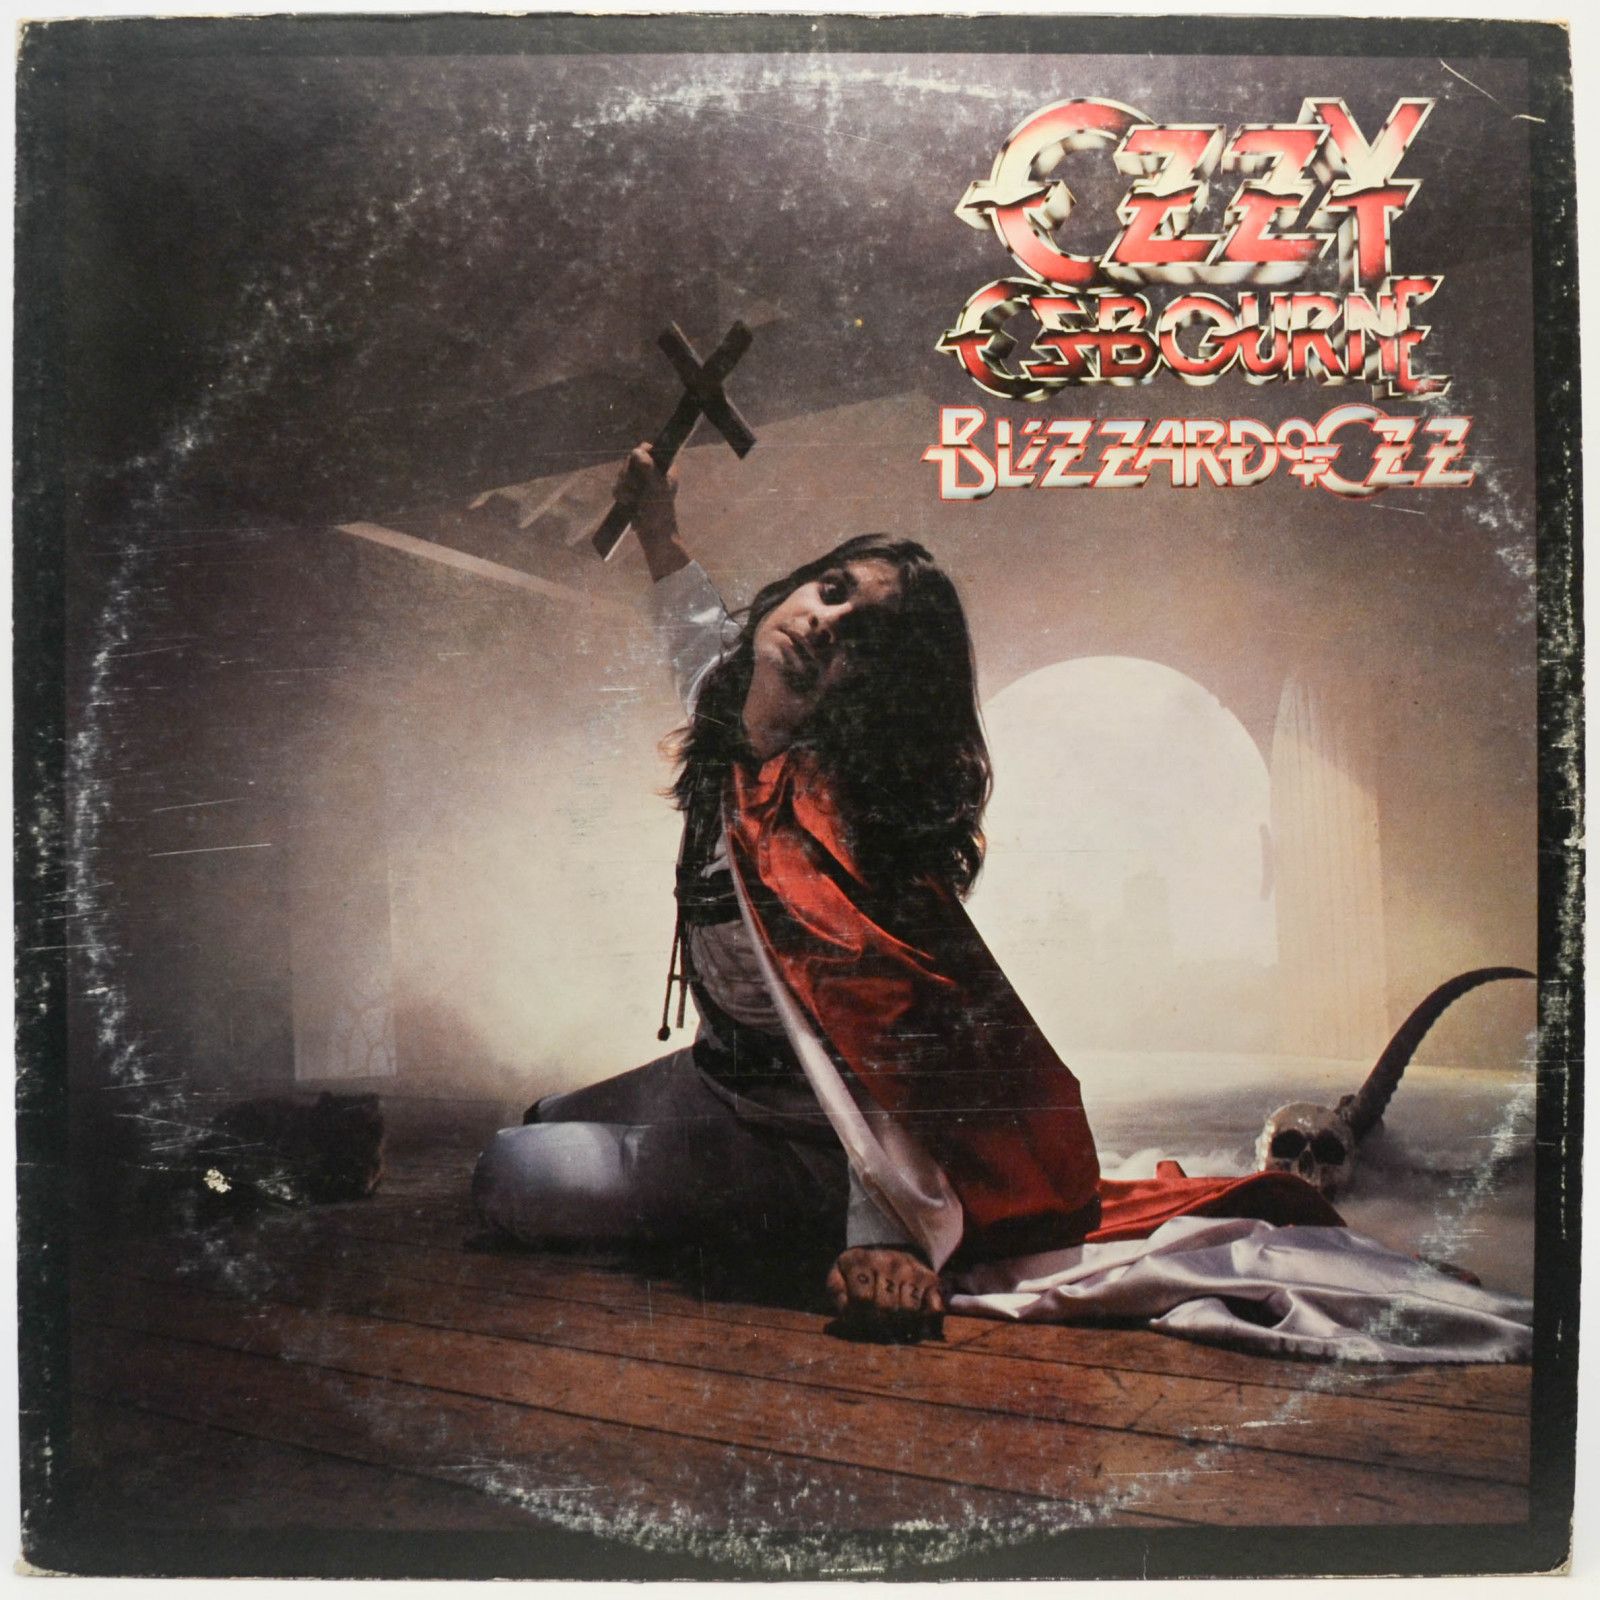 Ozzy Osbourne — Blizzard Of Ozz, 1980